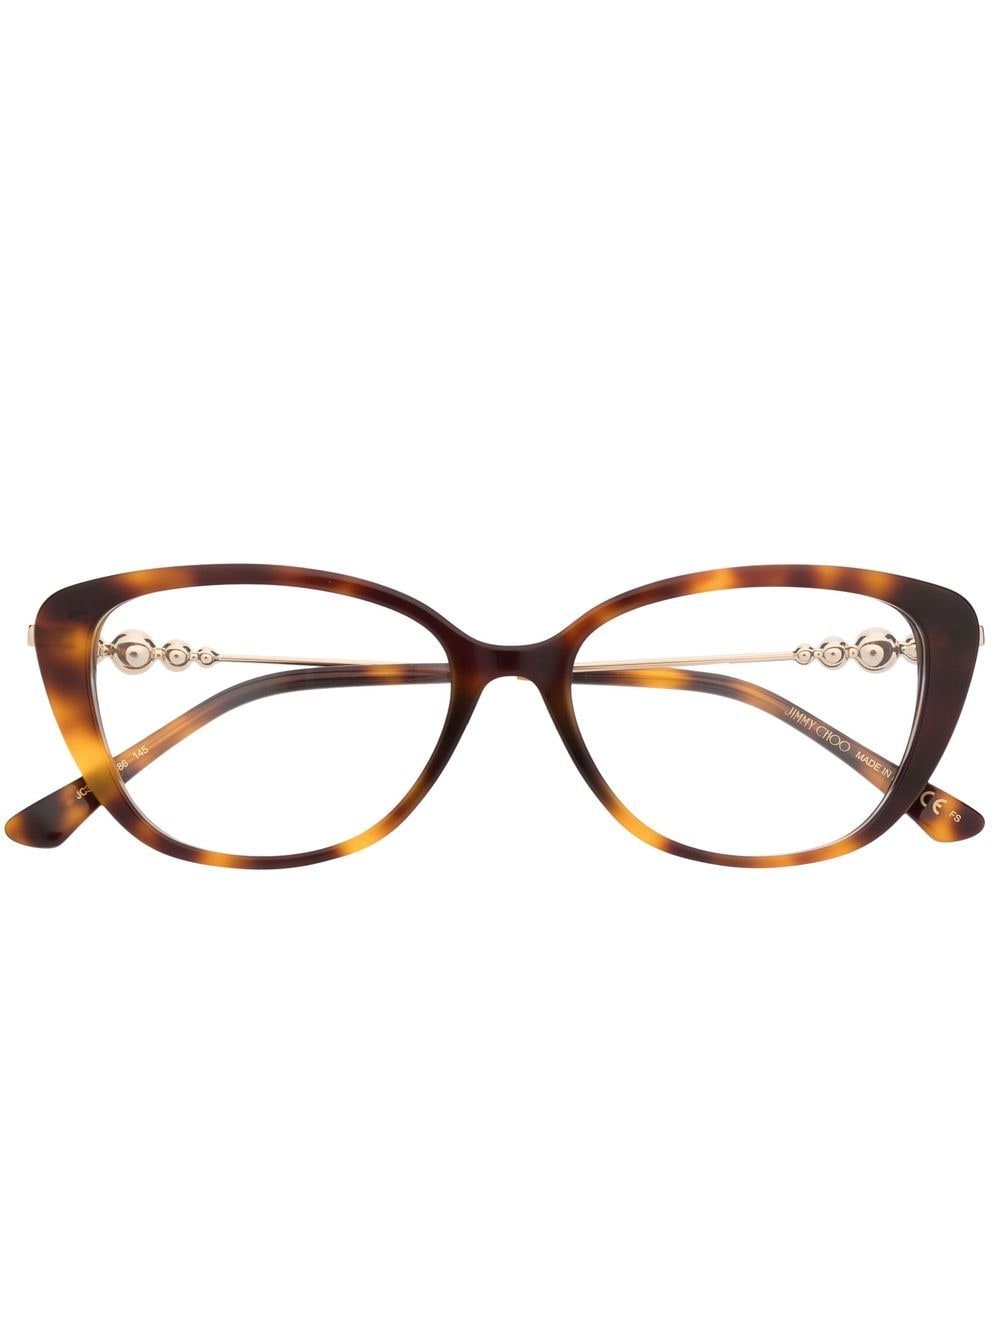 jimmy choo eyewear lunettes de vue à monture papillon - marron